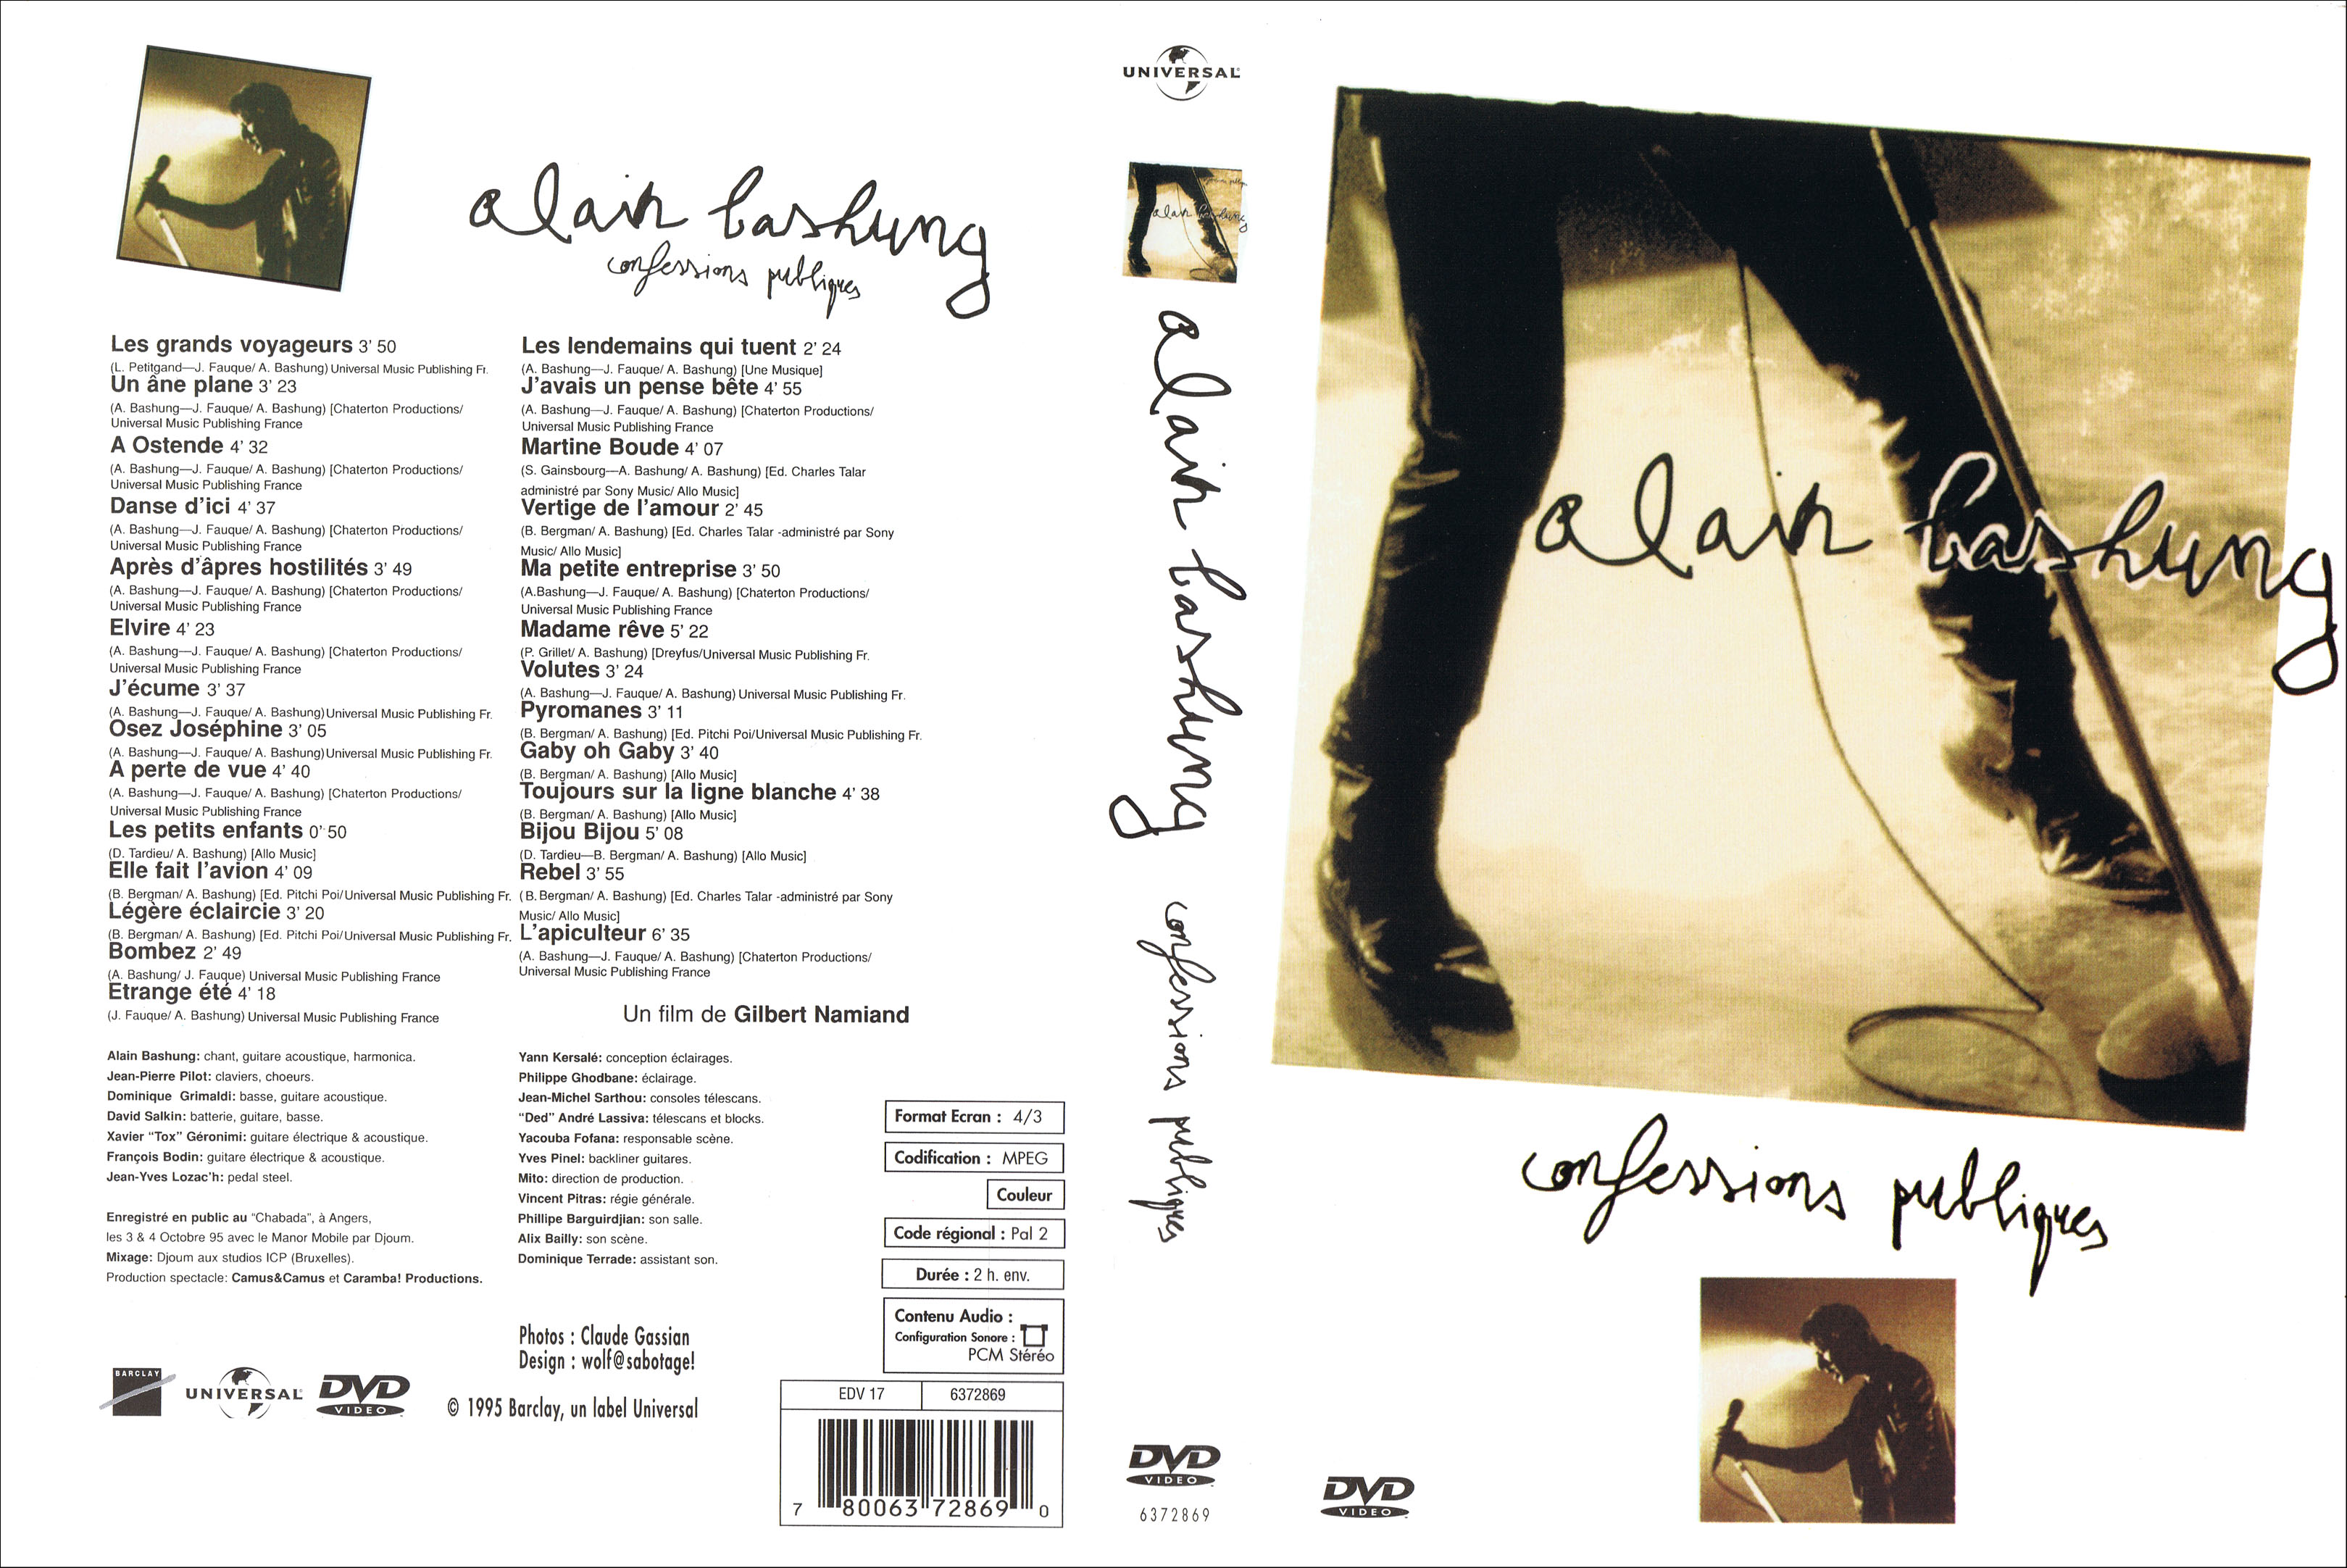 Jaquette DVD Alain Bashung Confessions publiques